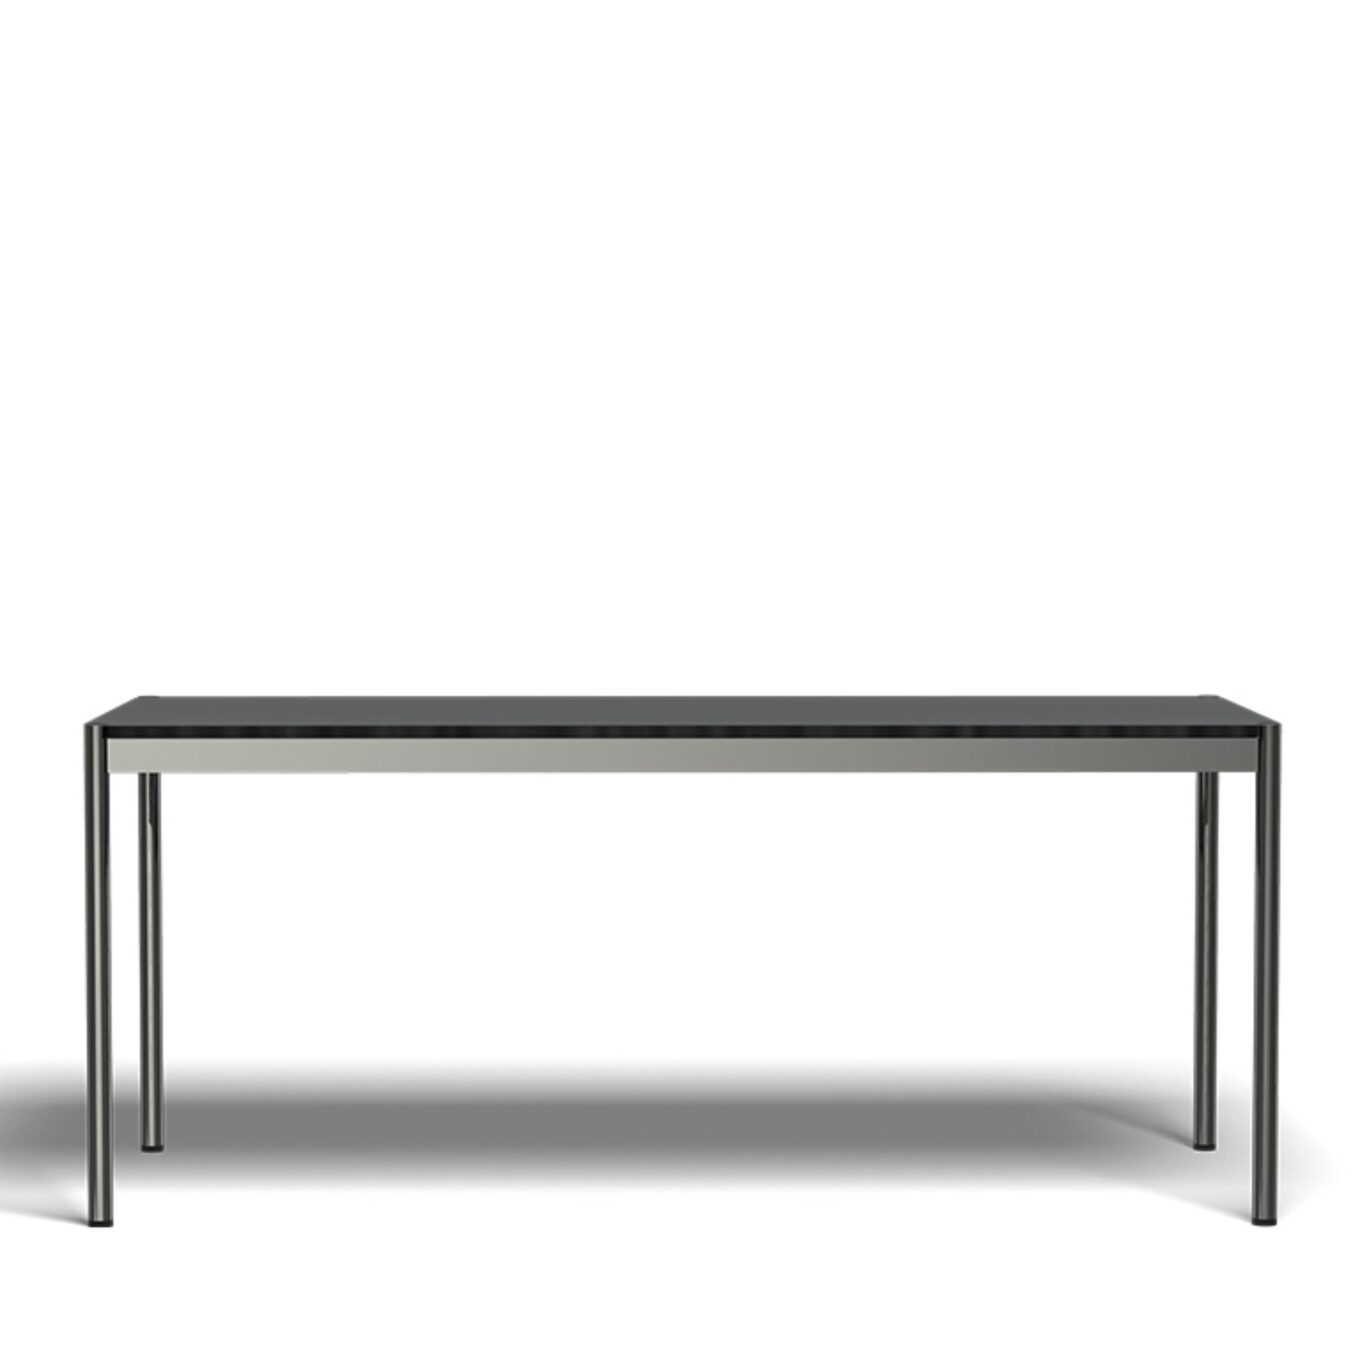 Table L1750 USM Haller – Linoléum - Image #1